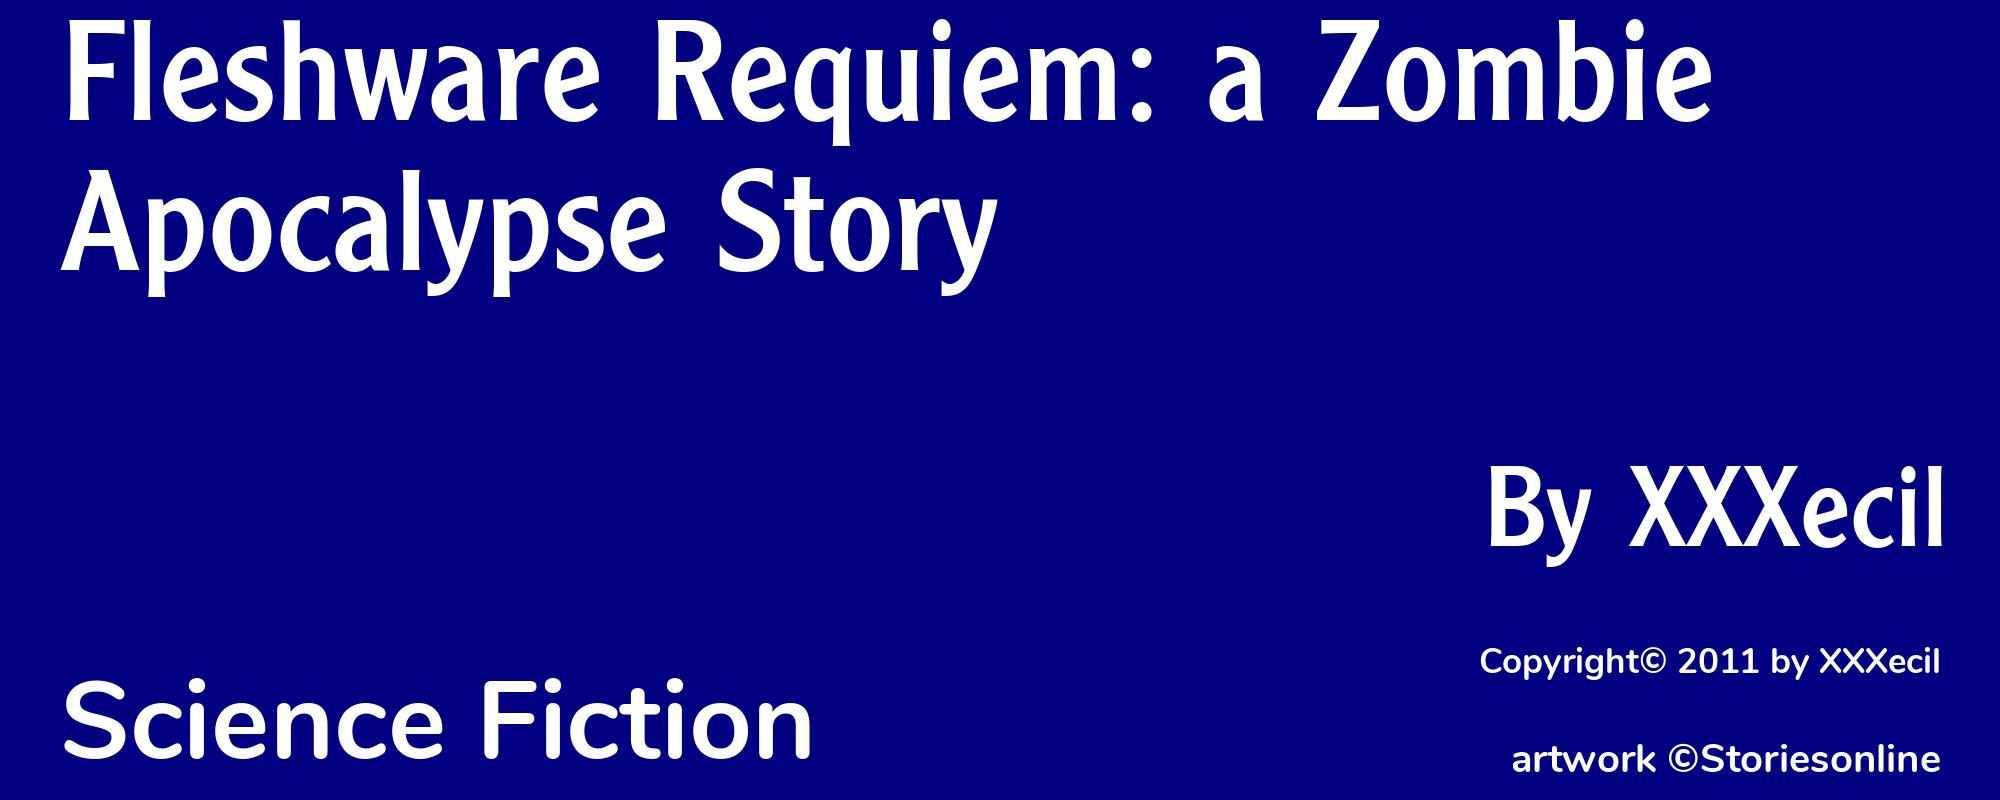 Fleshware Requiem: a Zombie Apocalypse Story - Cover